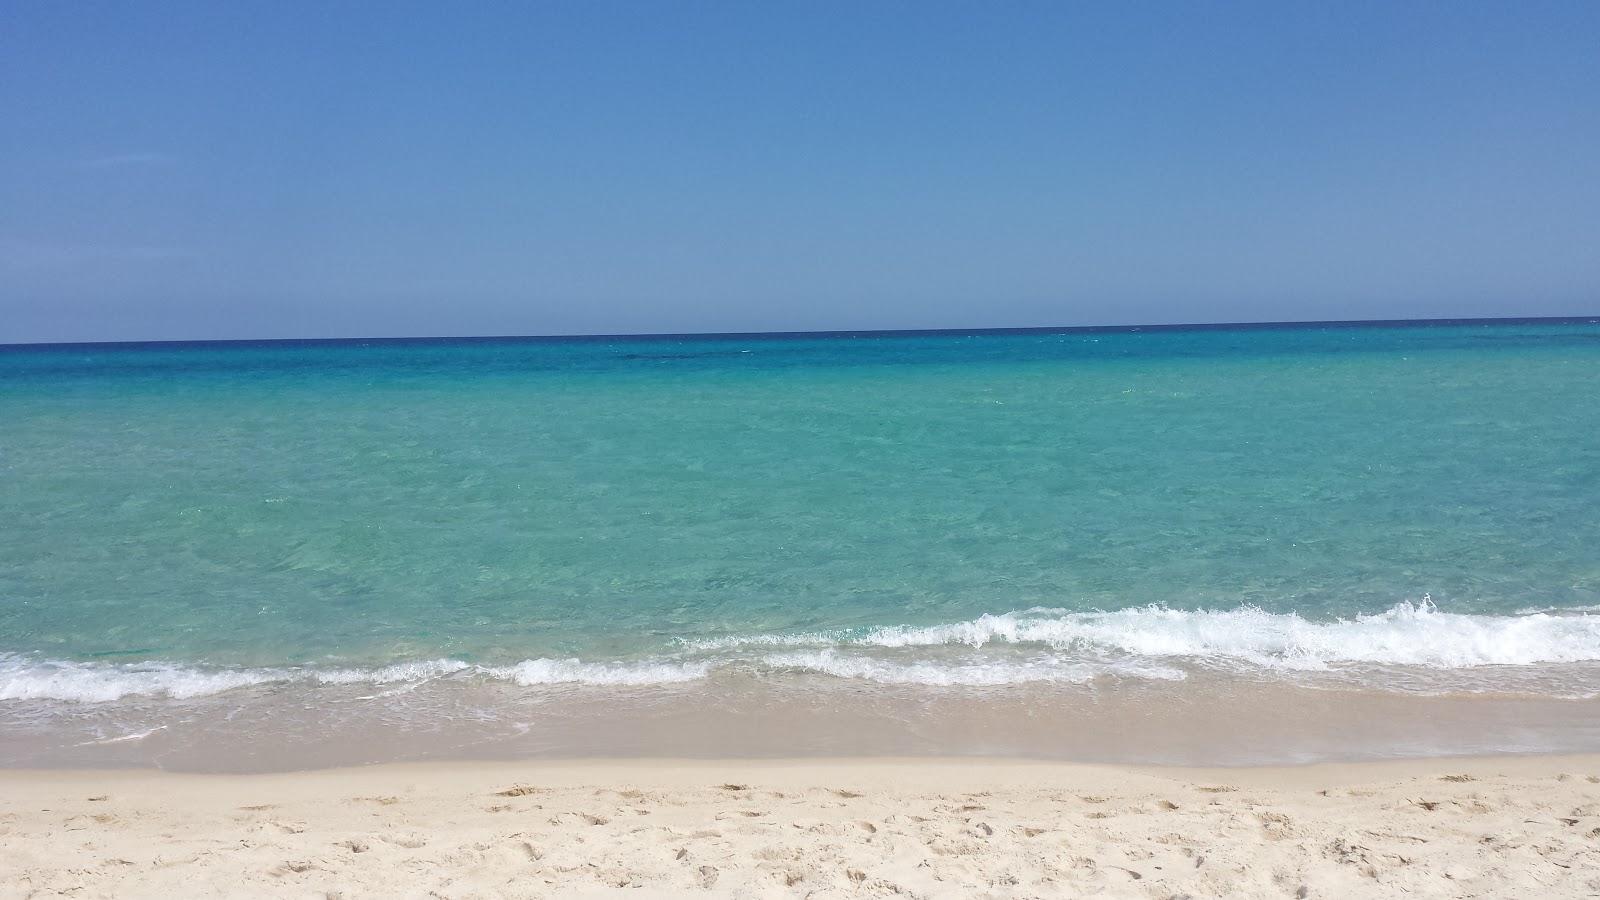 Foto de Spiaggia Rei Sole con parcialmente limpio nivel de limpieza